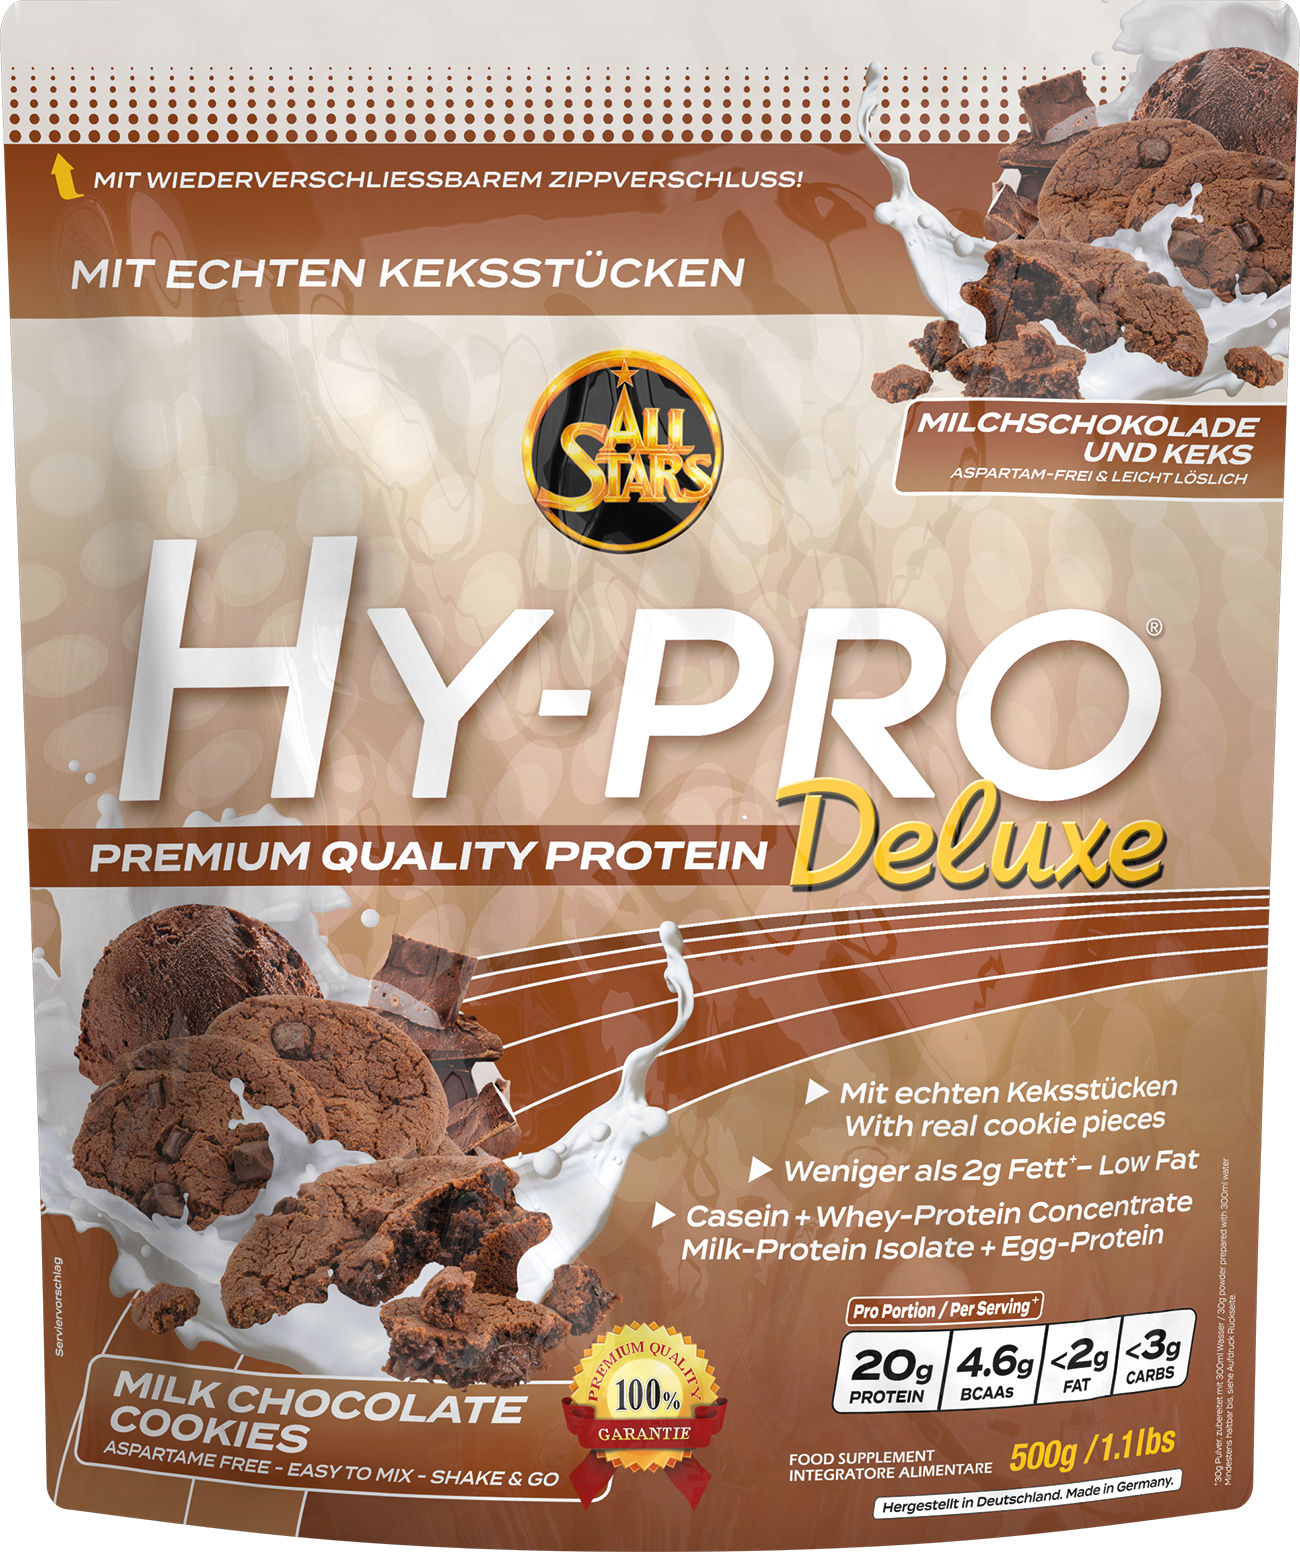 ALL STARS Hy-Pro Deluxe im leckeren Milk Chocolate Geschmack